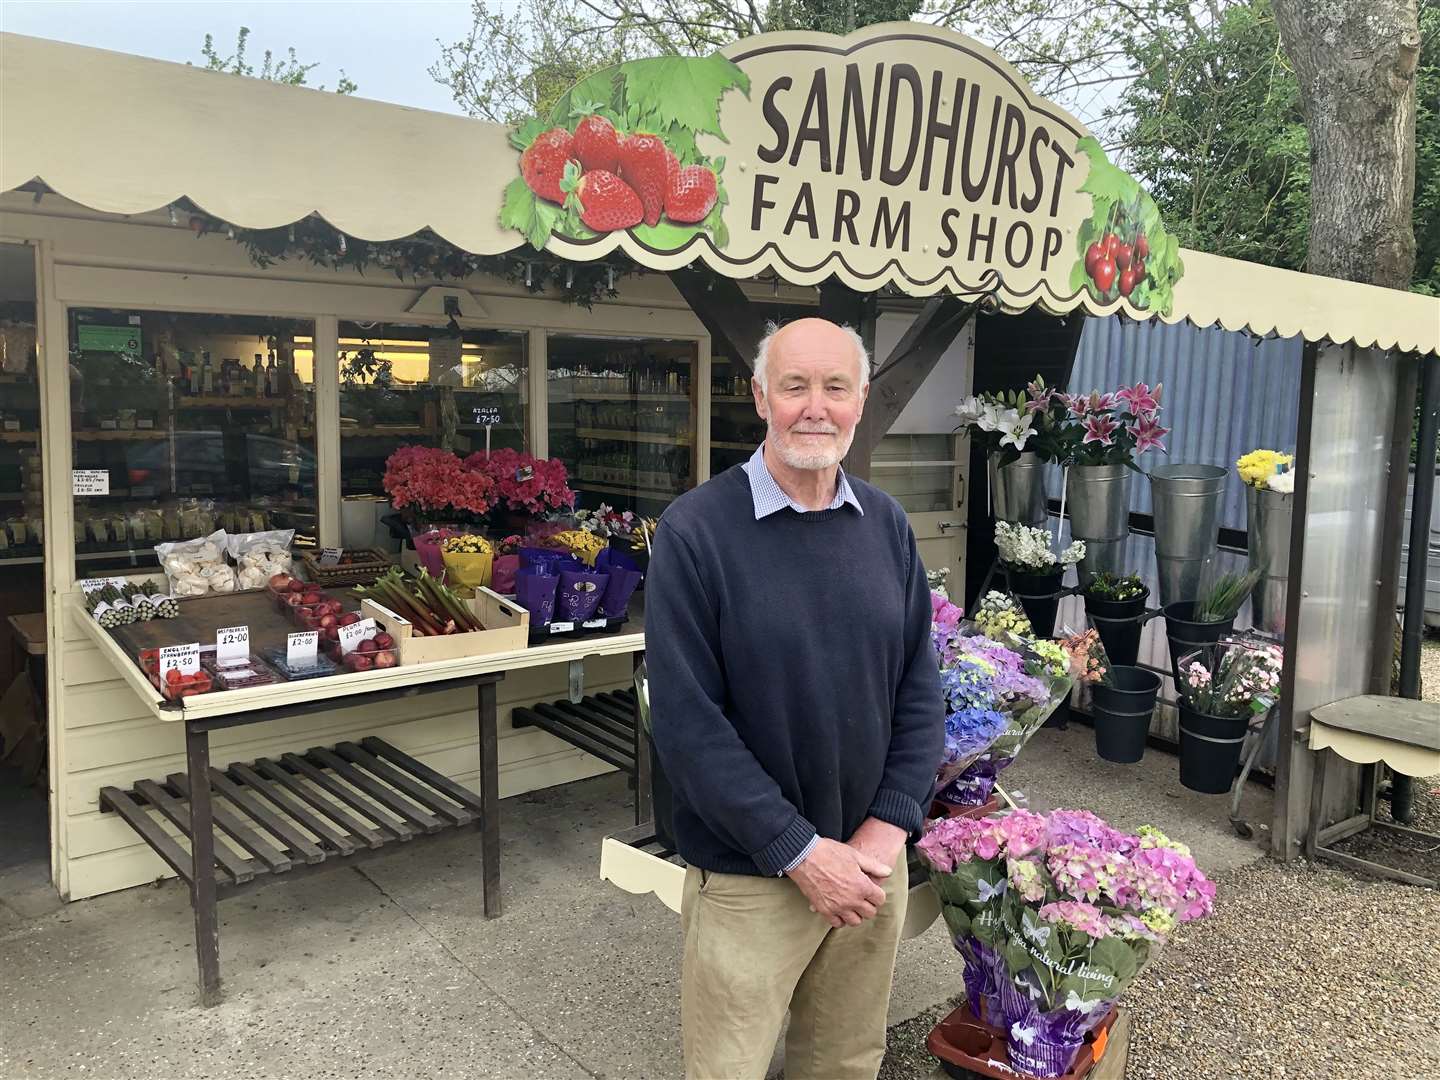 Ashley Goodhew is selling his Sandhurst Farm Shop (9403270)